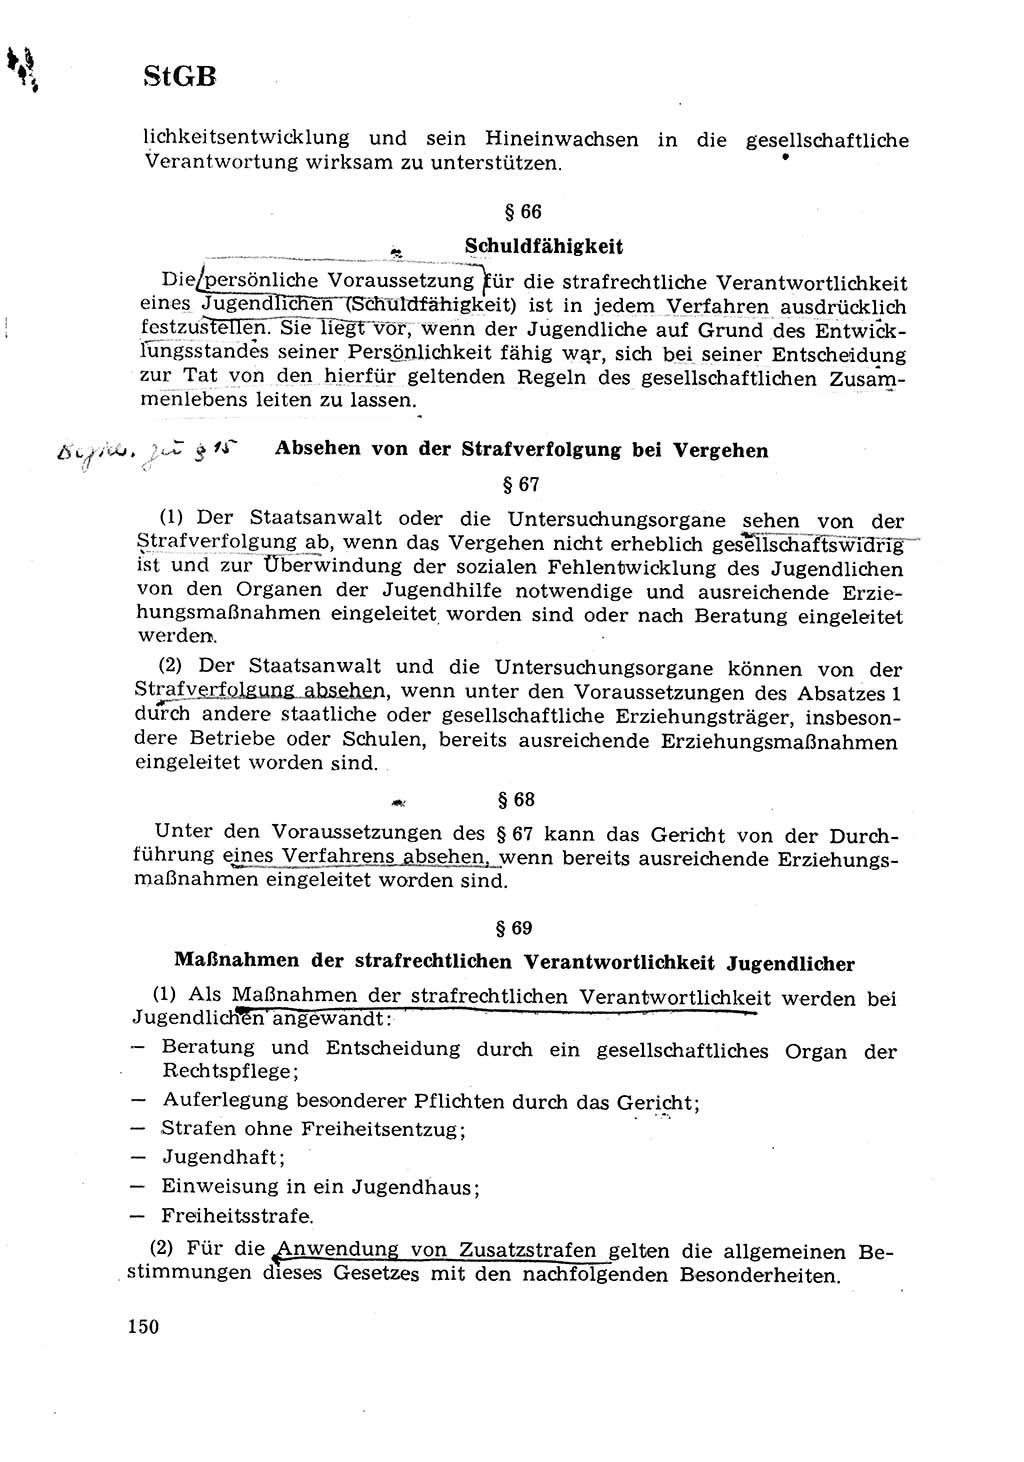 Strafrecht [Deutsche Demokratische Republik (DDR)] 1968, Seite 150 (Strafr. DDR 1968, S. 150)